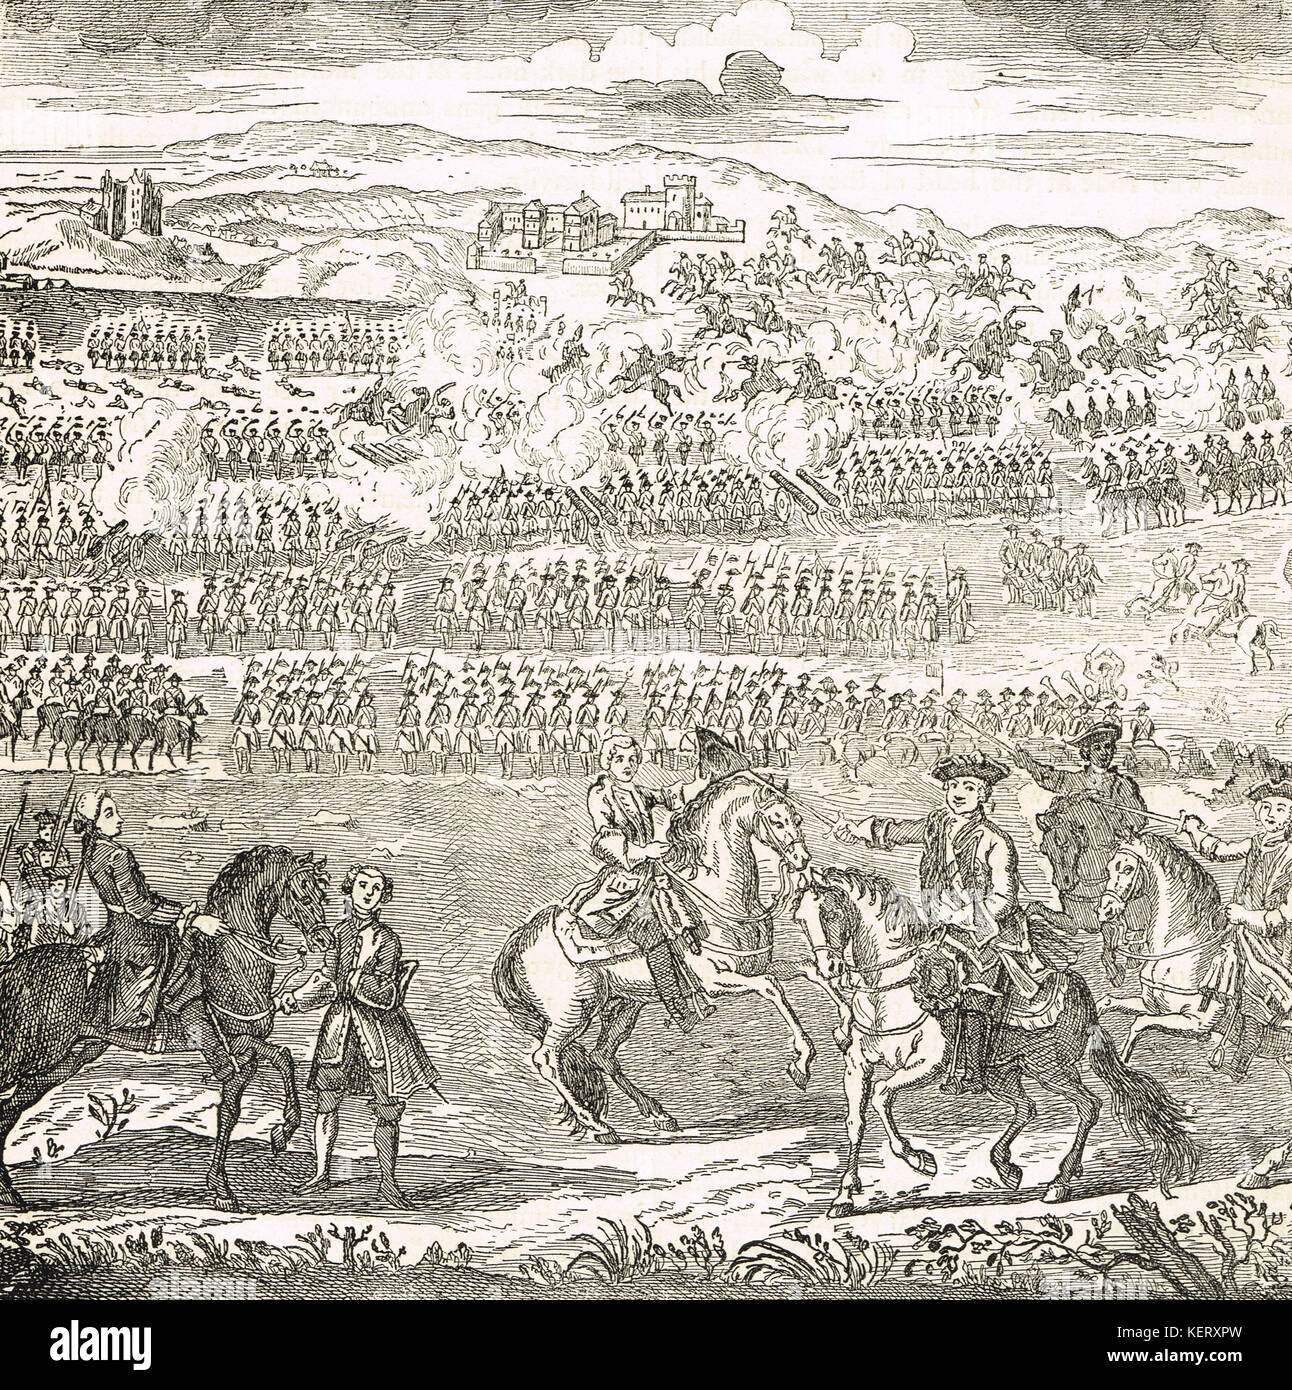 La batalla de Culloden, 16 de abril de 1746 Foto de stock